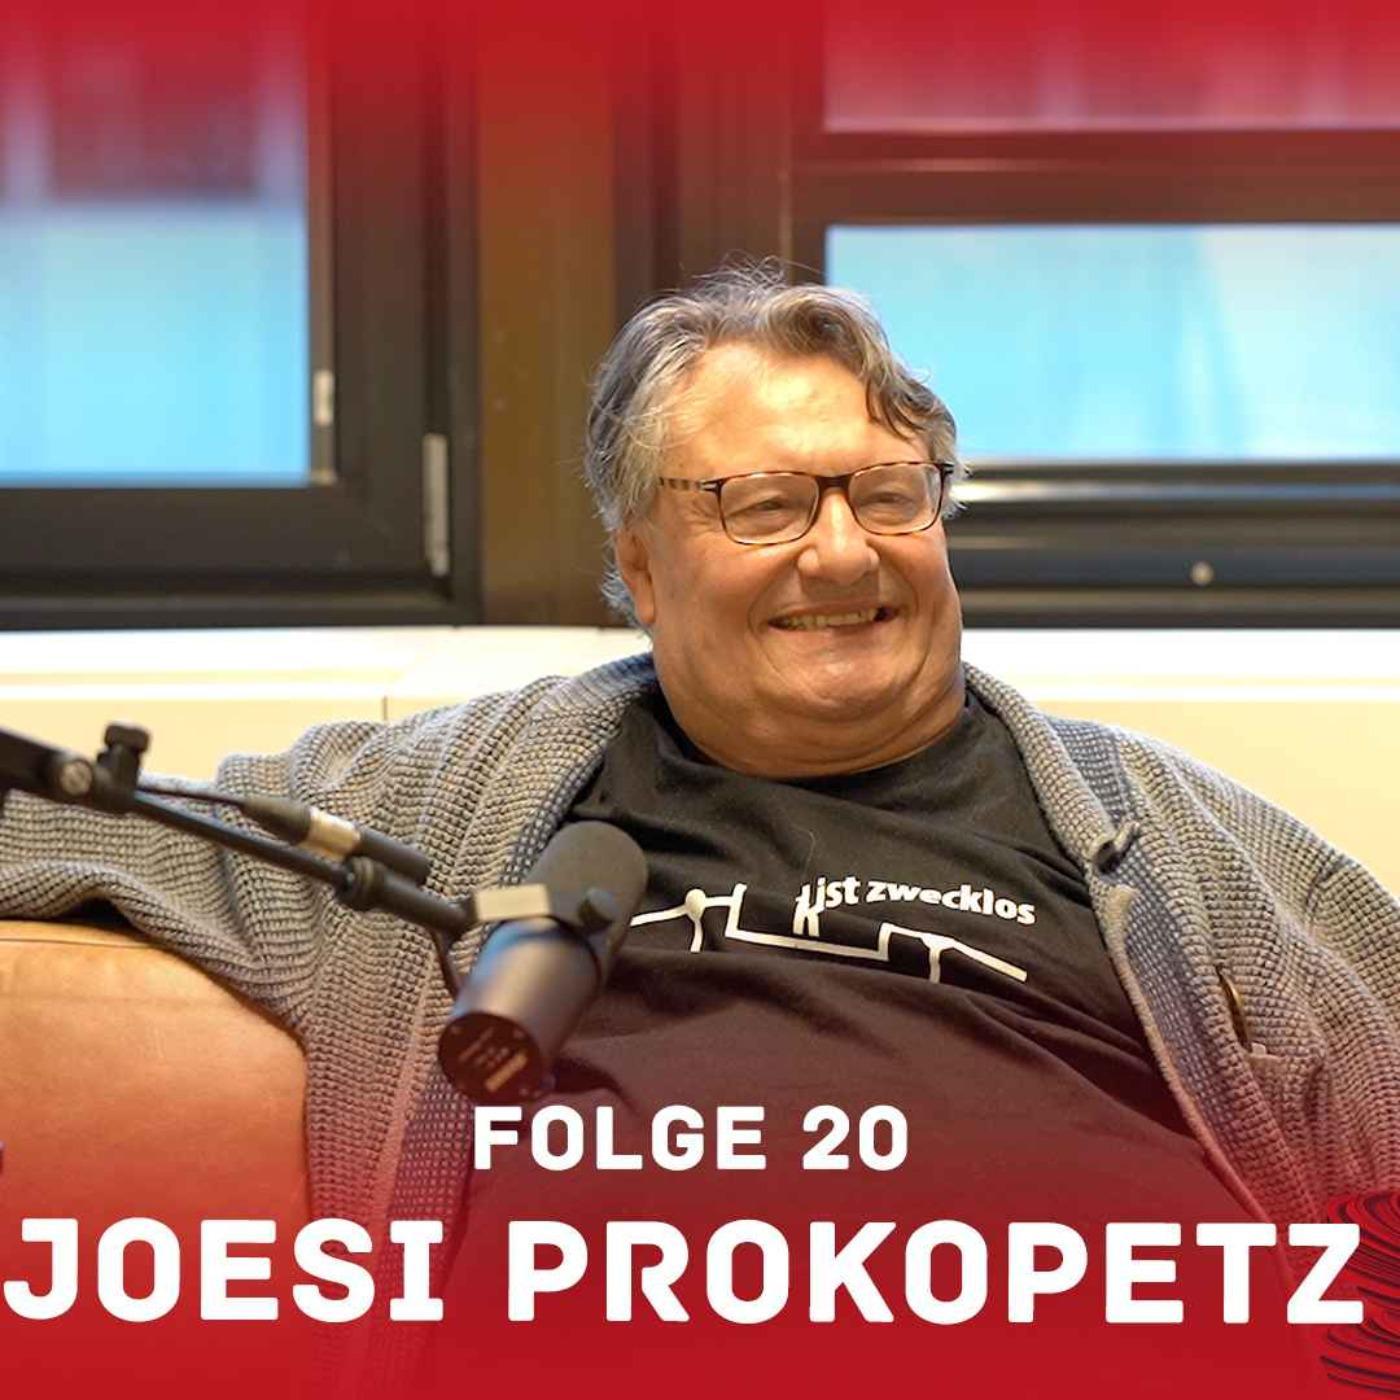 Joesi Prokopetz